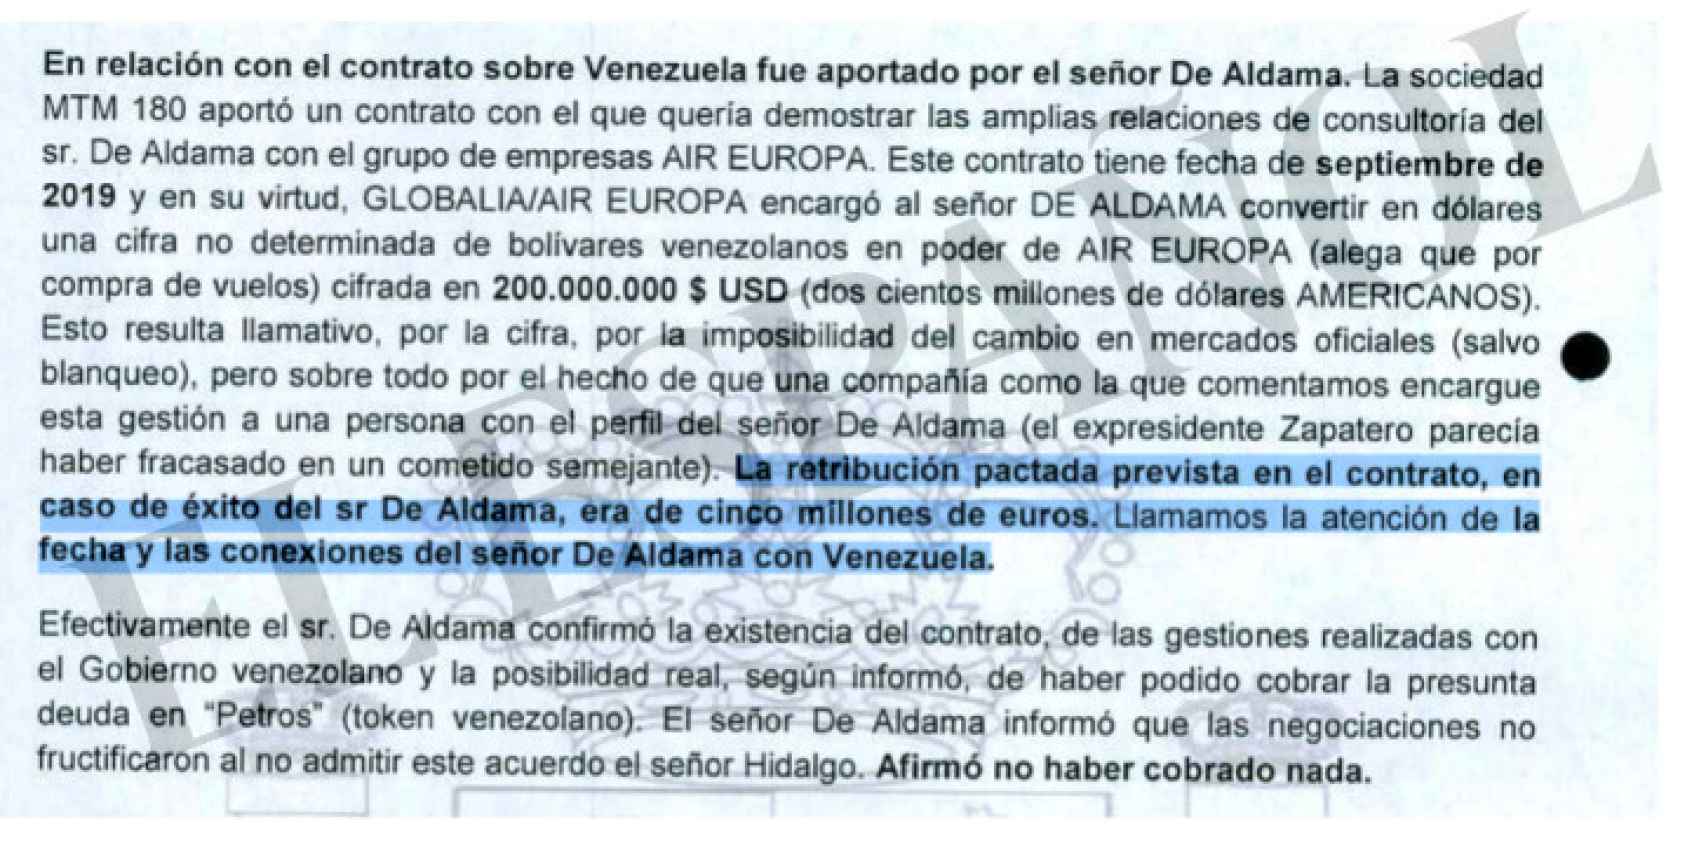 La Agencia Tributaria dejó por escrito sus sospechas sobre la relación de Aldama con Venezuela.